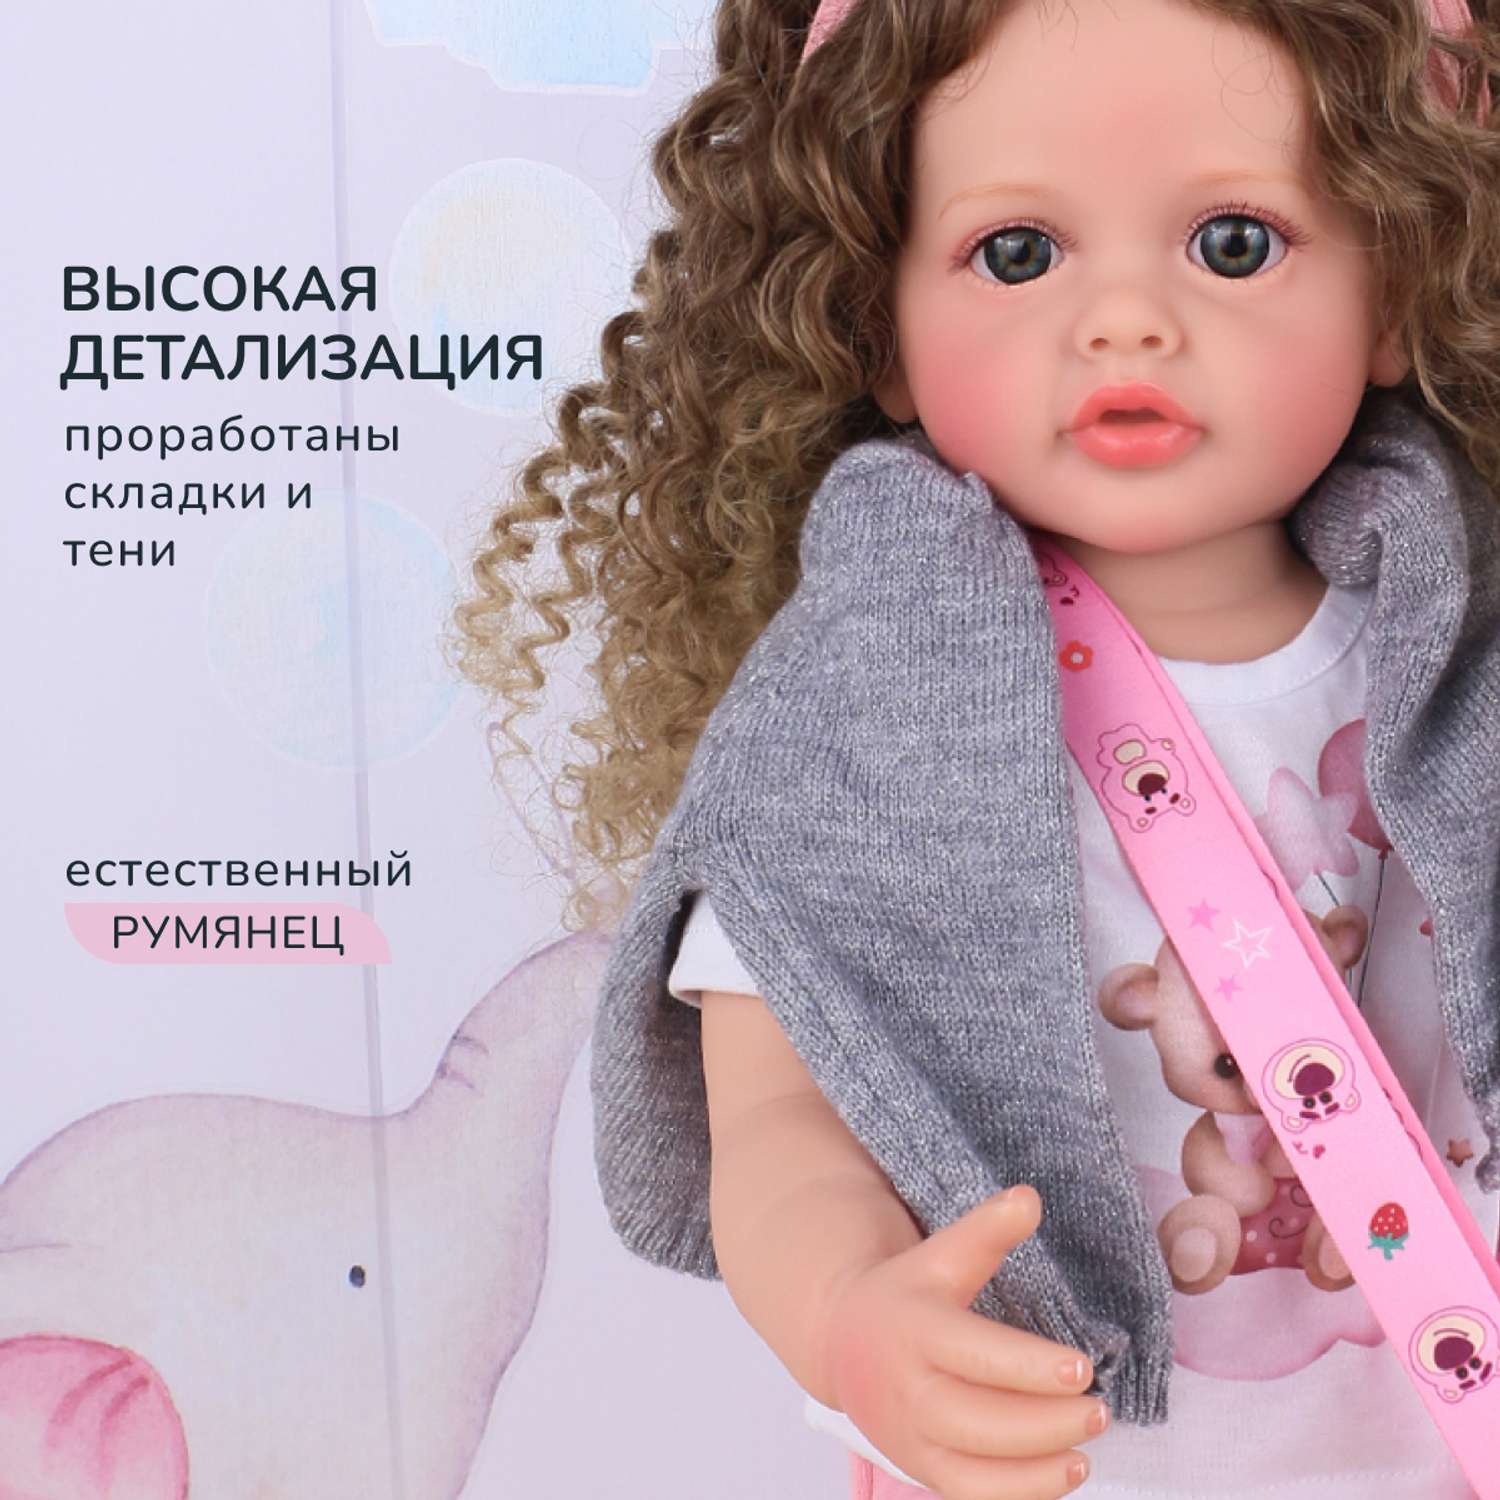 Кукла Реборн QA BABY Маргарита большая пупс набор игрушки для девочки 55 см 5552 - фото 10